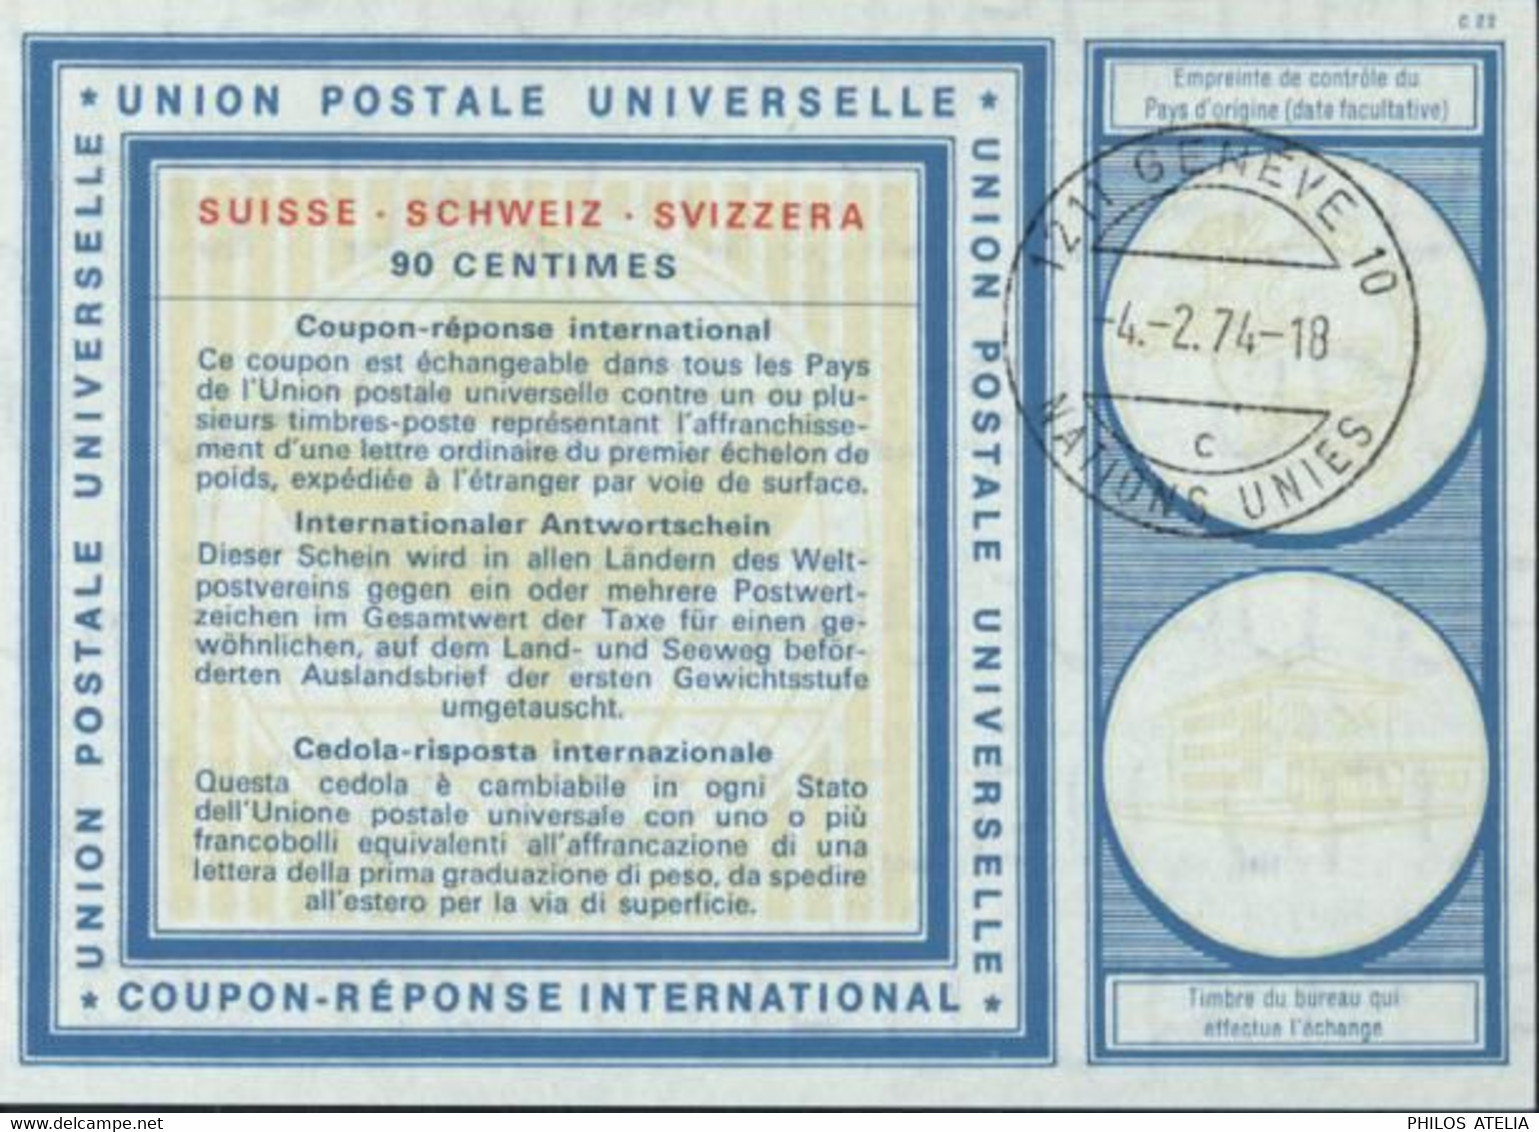 Coupon Réponse International UPU Suisse 90 Cts CAD 1211 Genève 10 Nations Unies 4 2 74 - 18 C - Brieven En Documenten